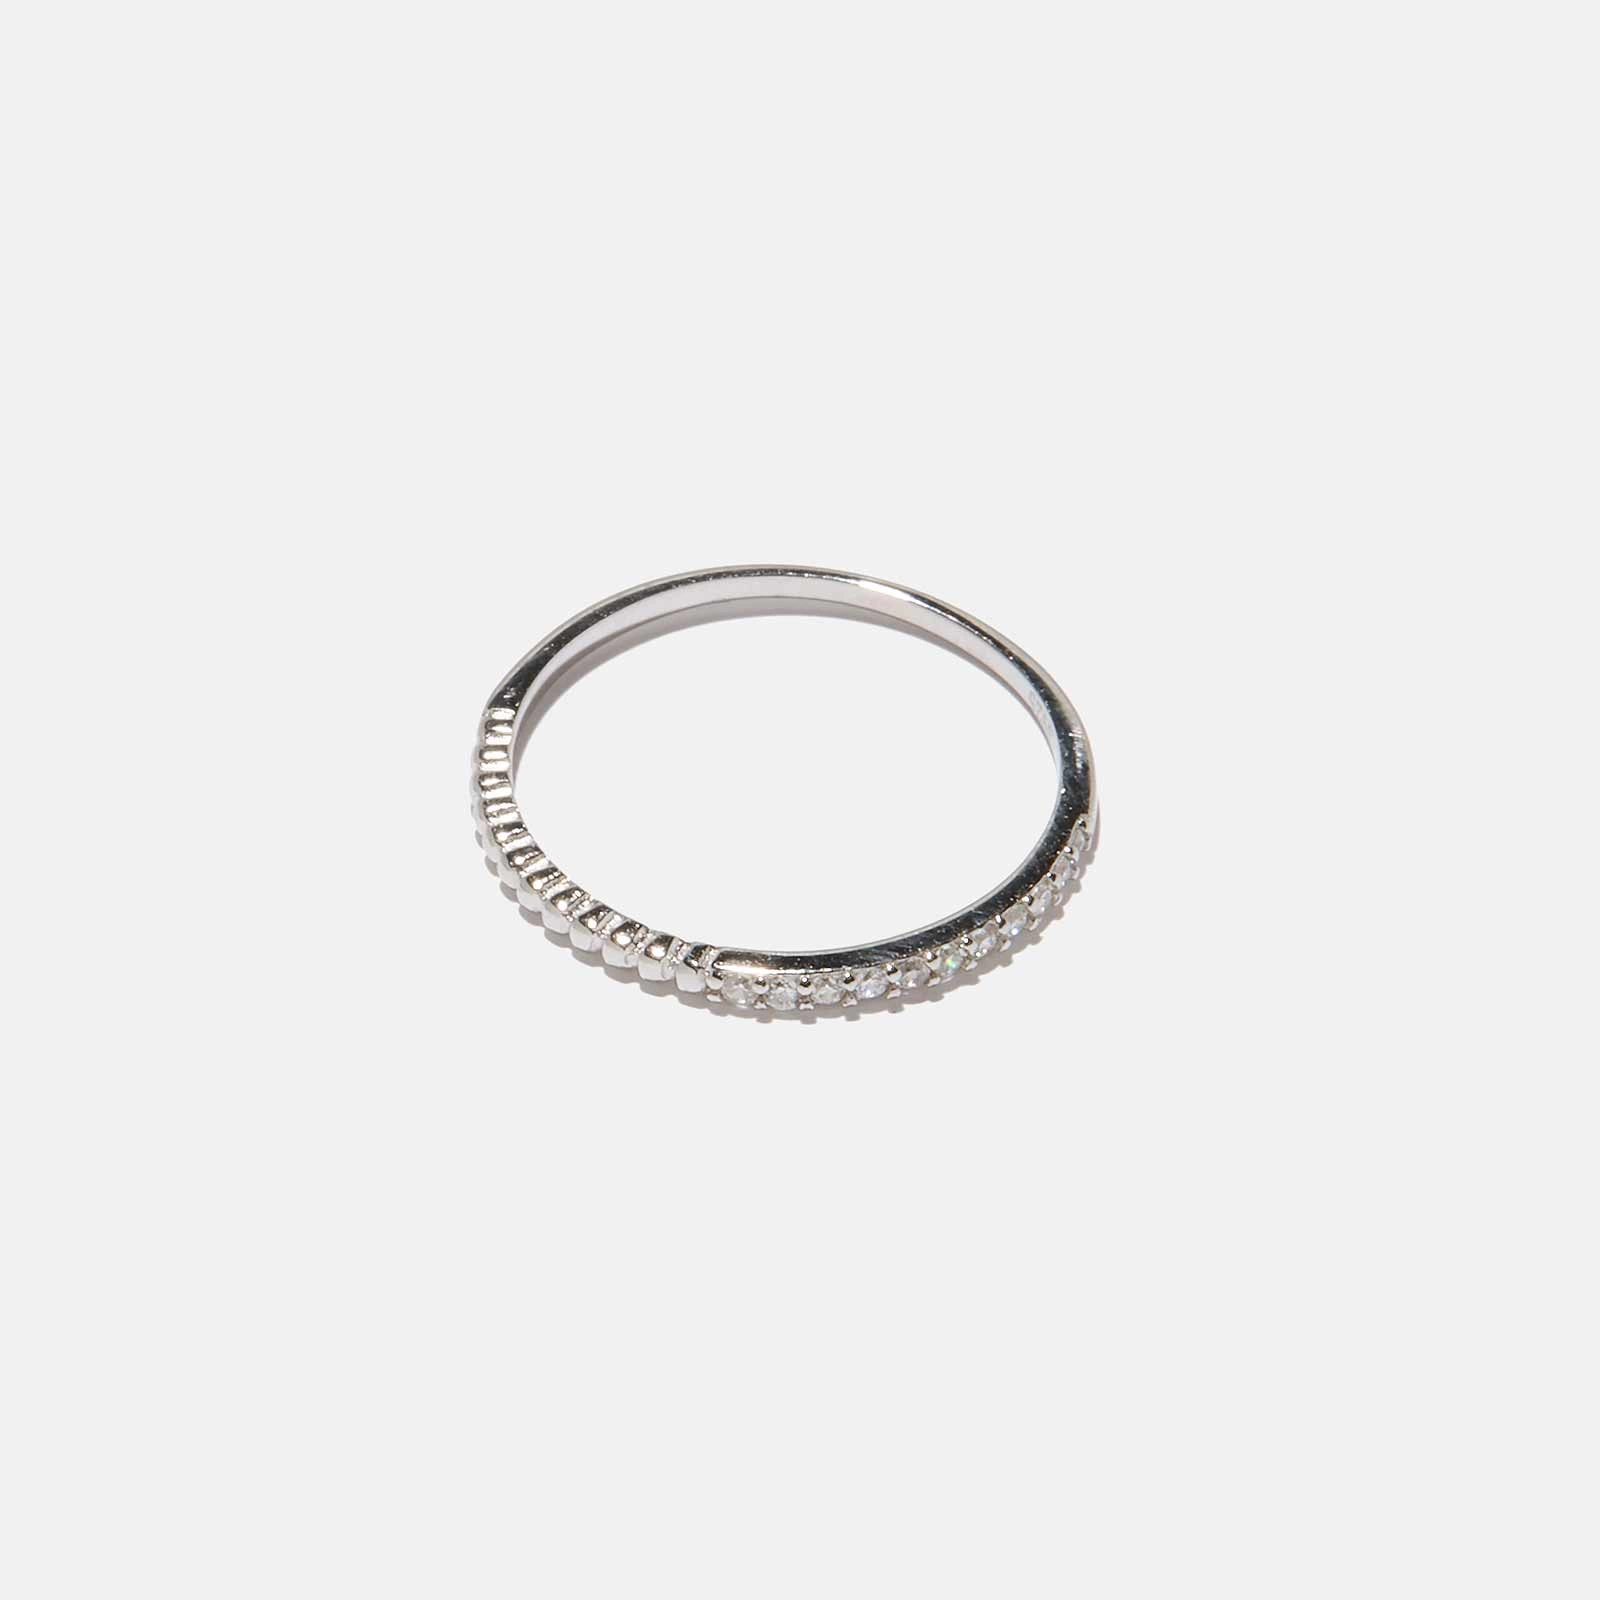 Ring i äkta silver - half and half, 1,2mm bred